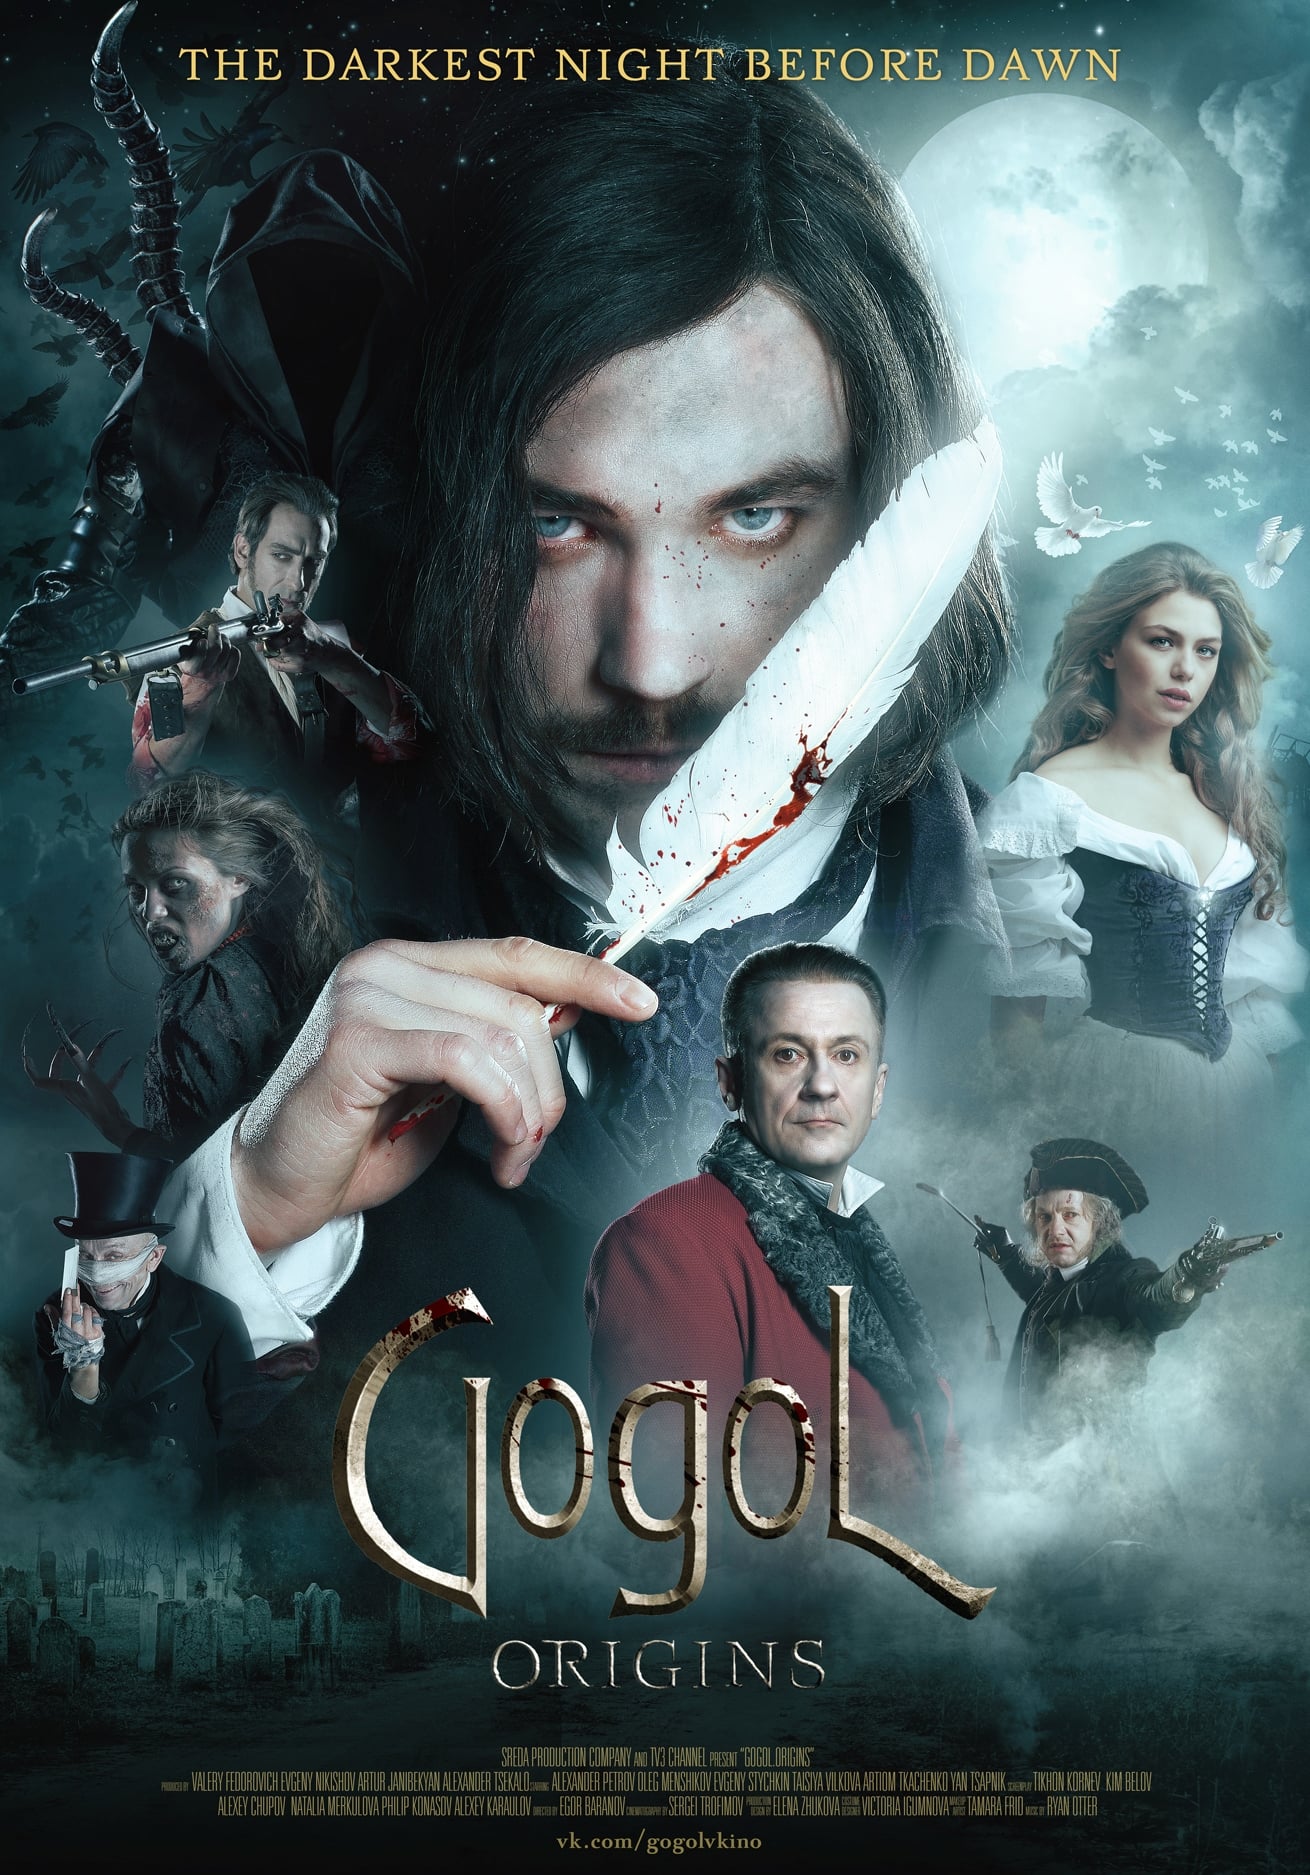 Plakát pro film “Gogol: Začátek”